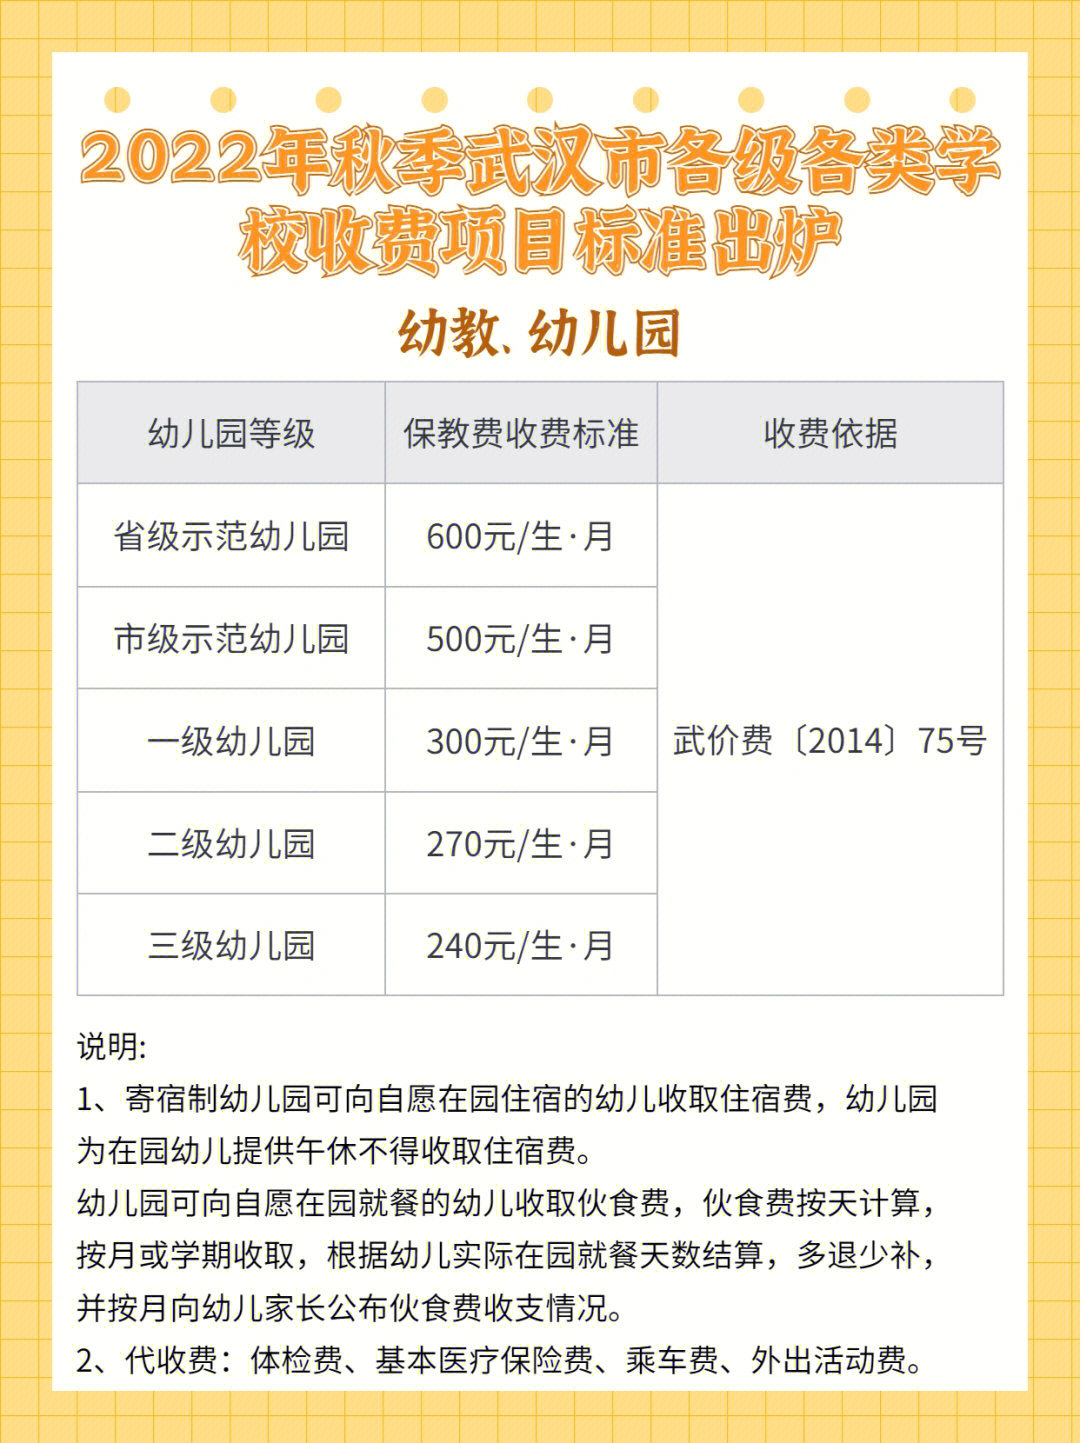 武汉市各个年级公办学校秋季收费标准出炉